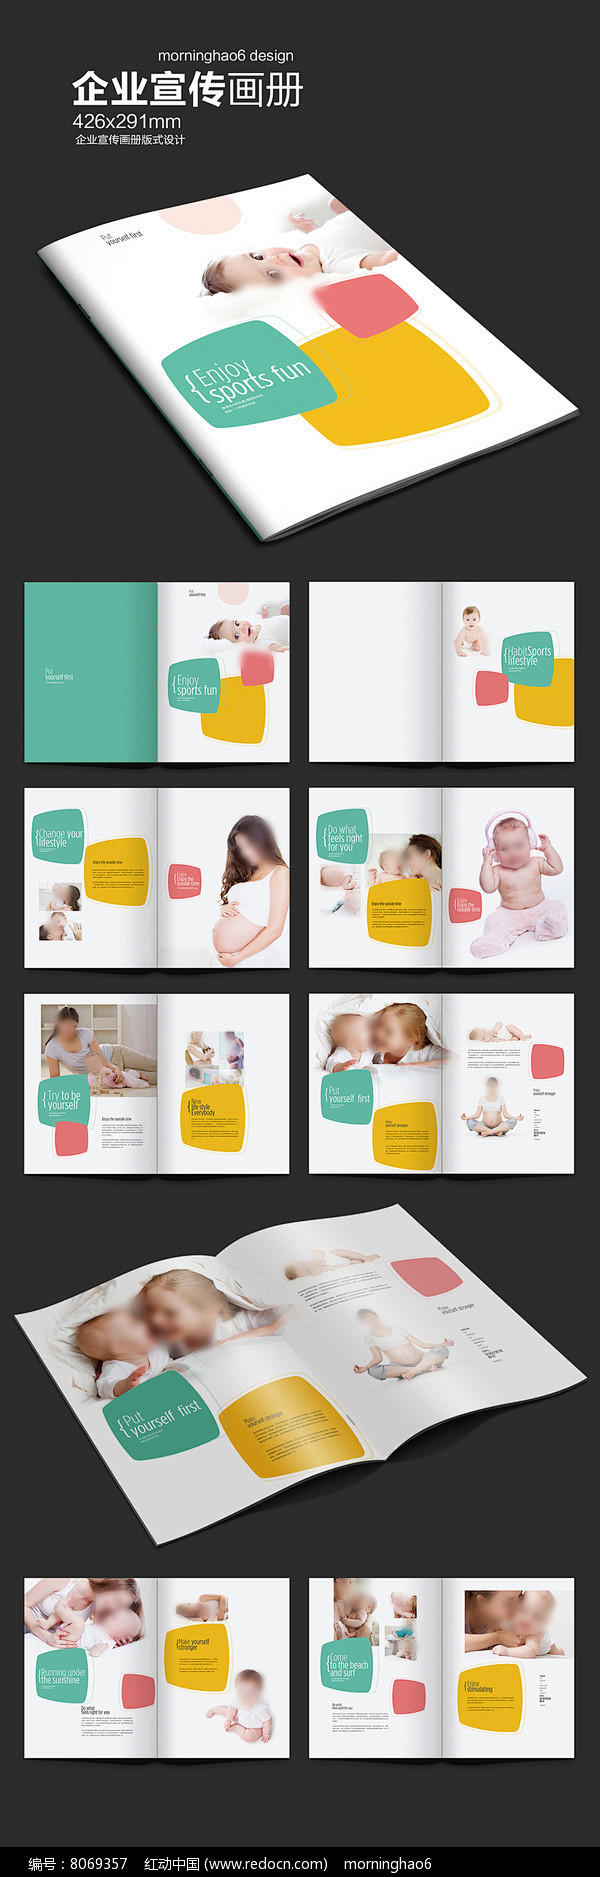 元素系列正方形孕婴产品画册图片 妇联封面...